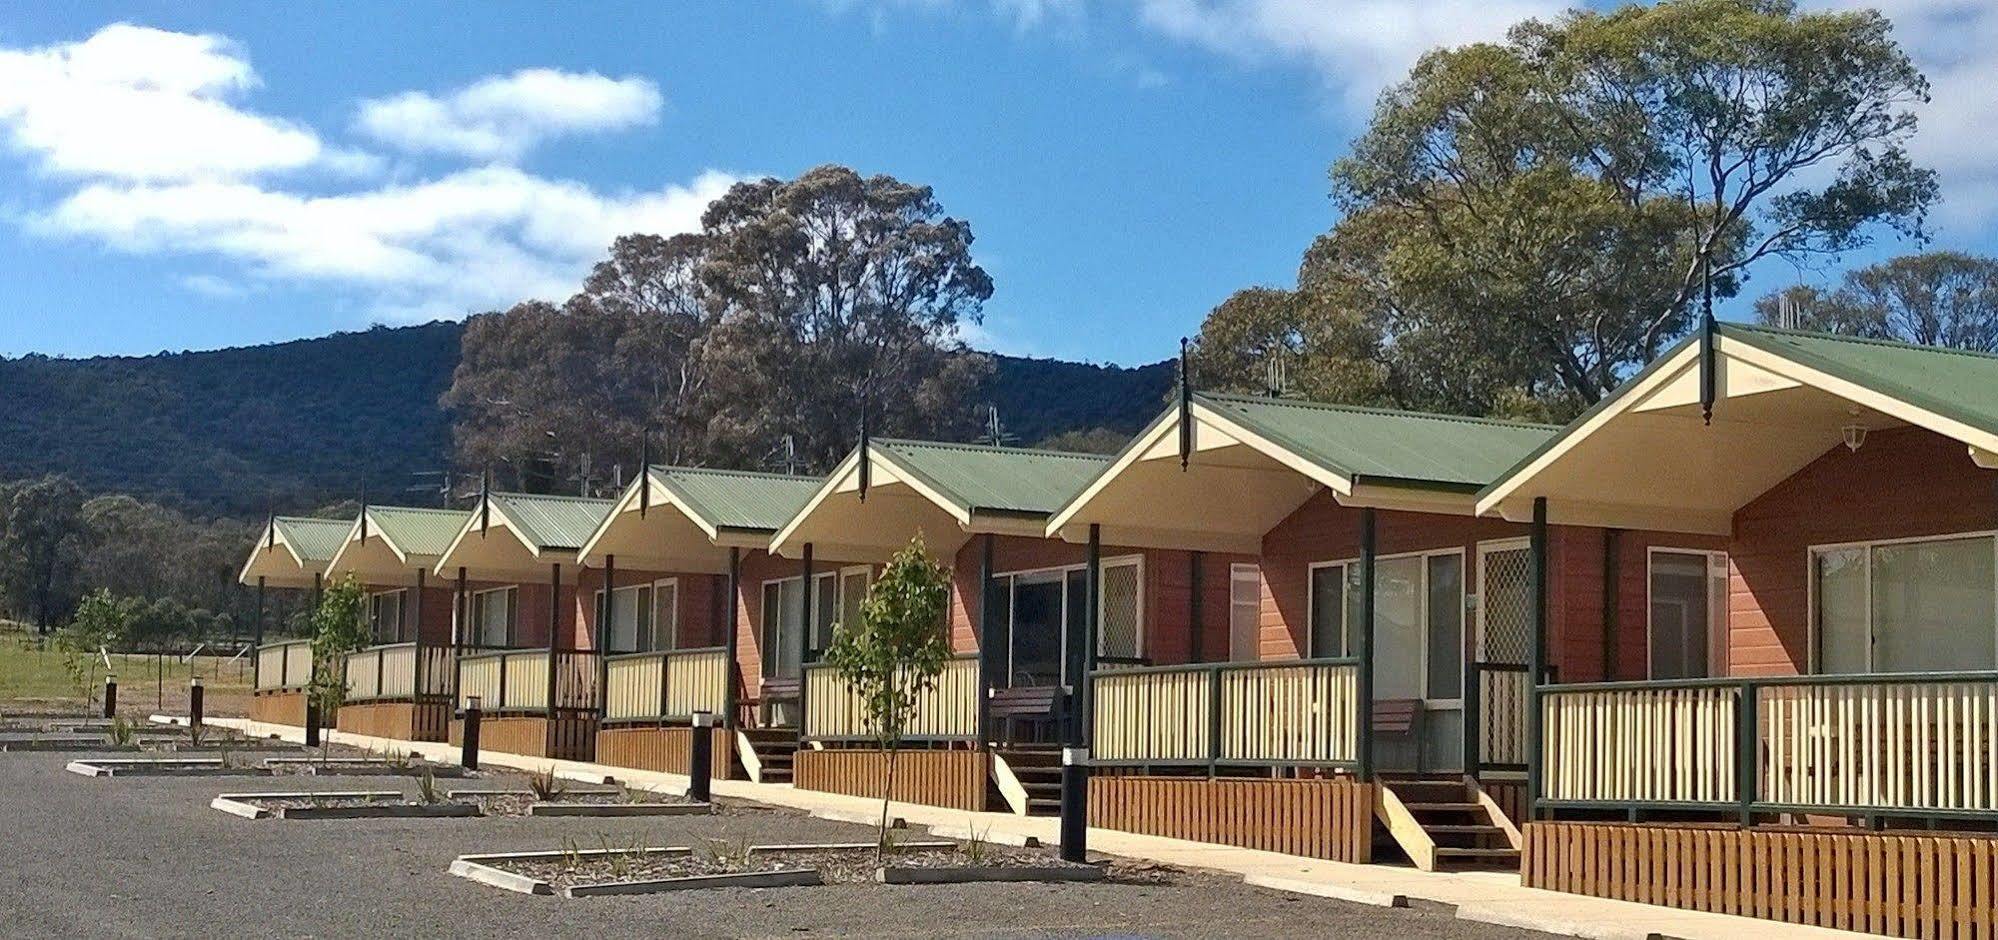 Canberra Carotel Motel Kültér fotó